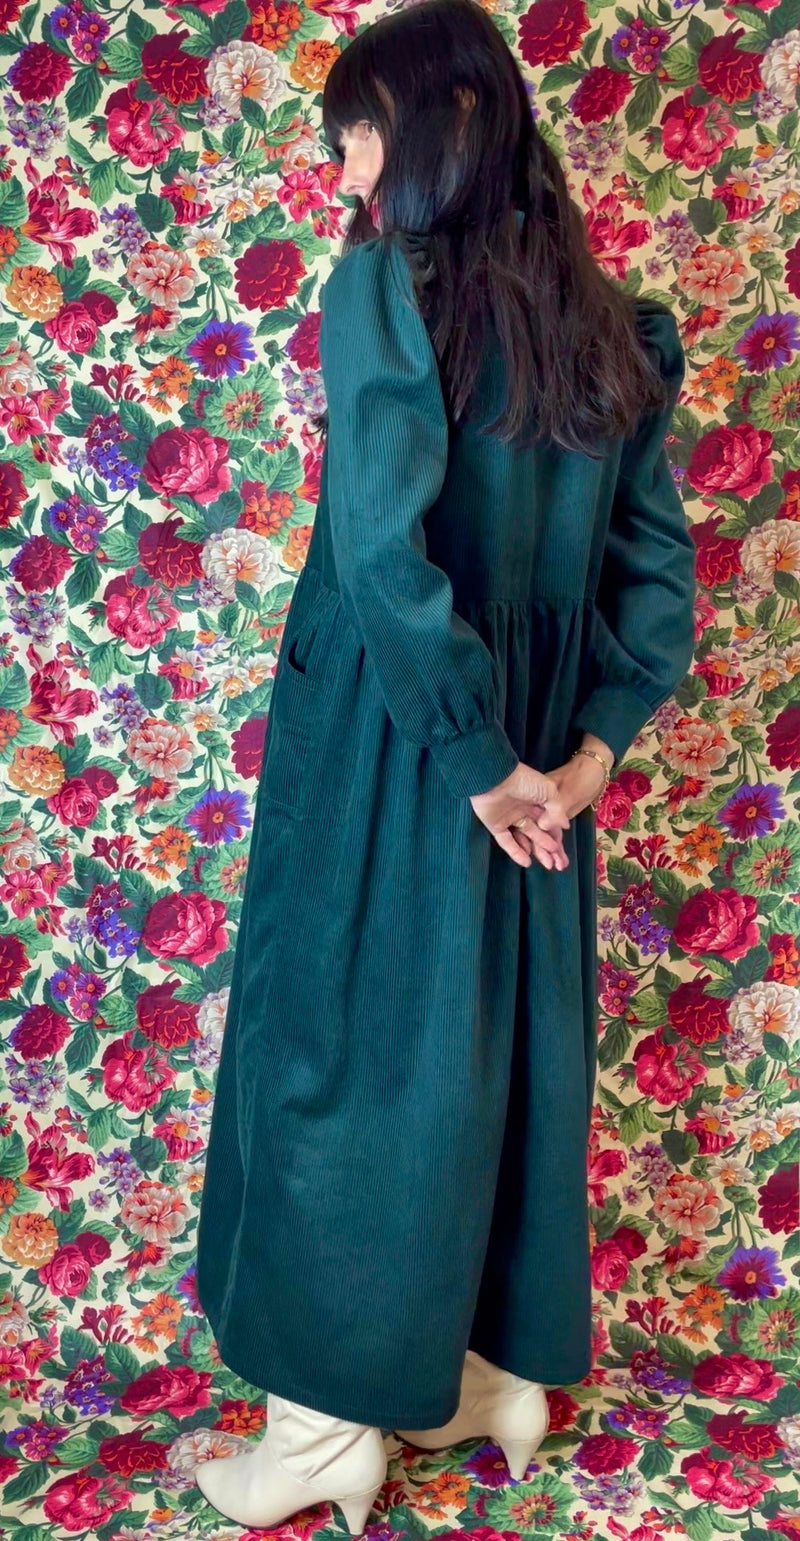 Matilda Green Cord Dress by Minkie Studio